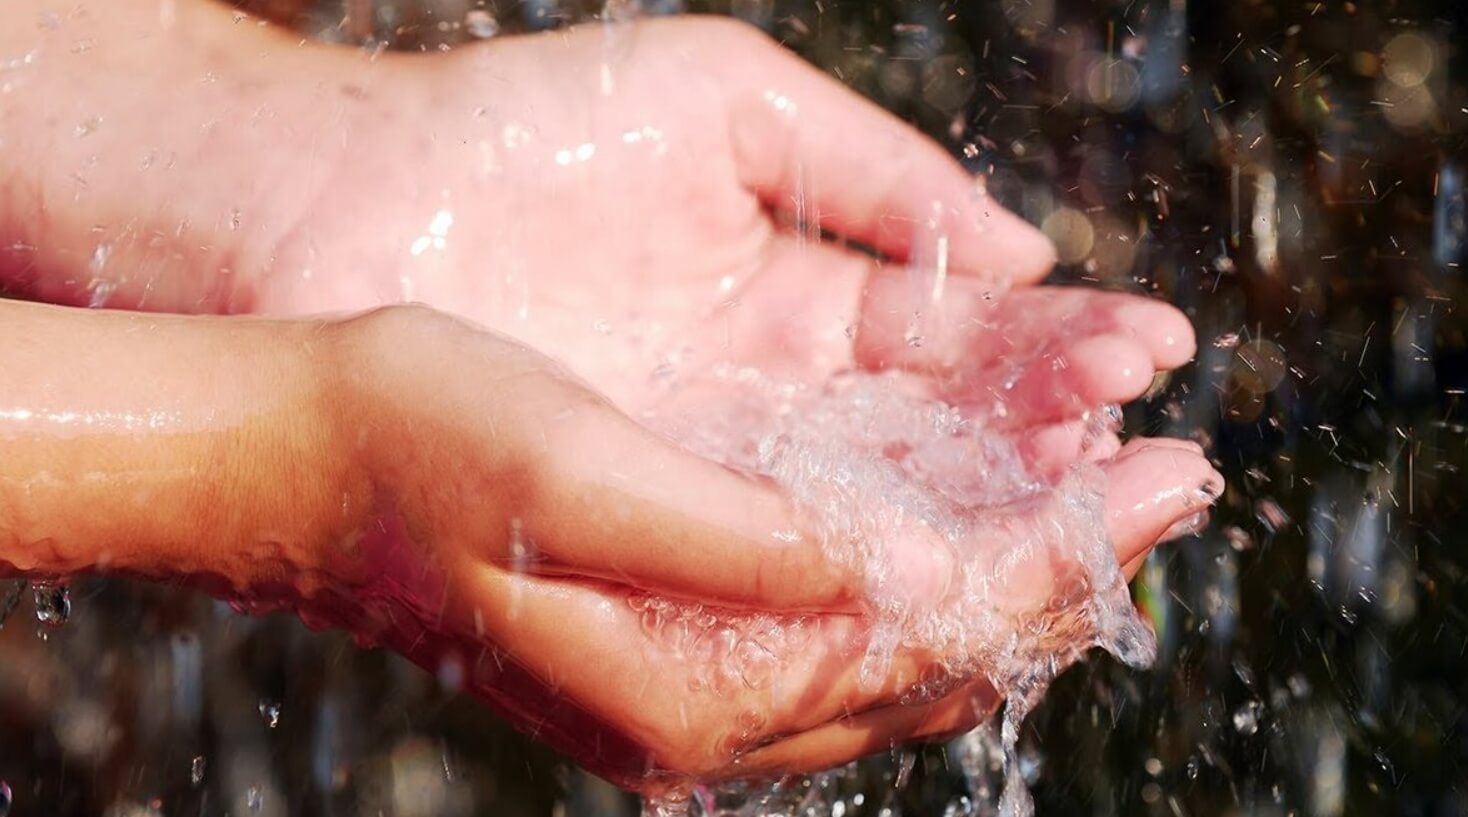 Исследование человеческой боли. В рамках эксперимента, студентов попросили держать руку в холодной воде. Изображение: Dreamstime. Фото.